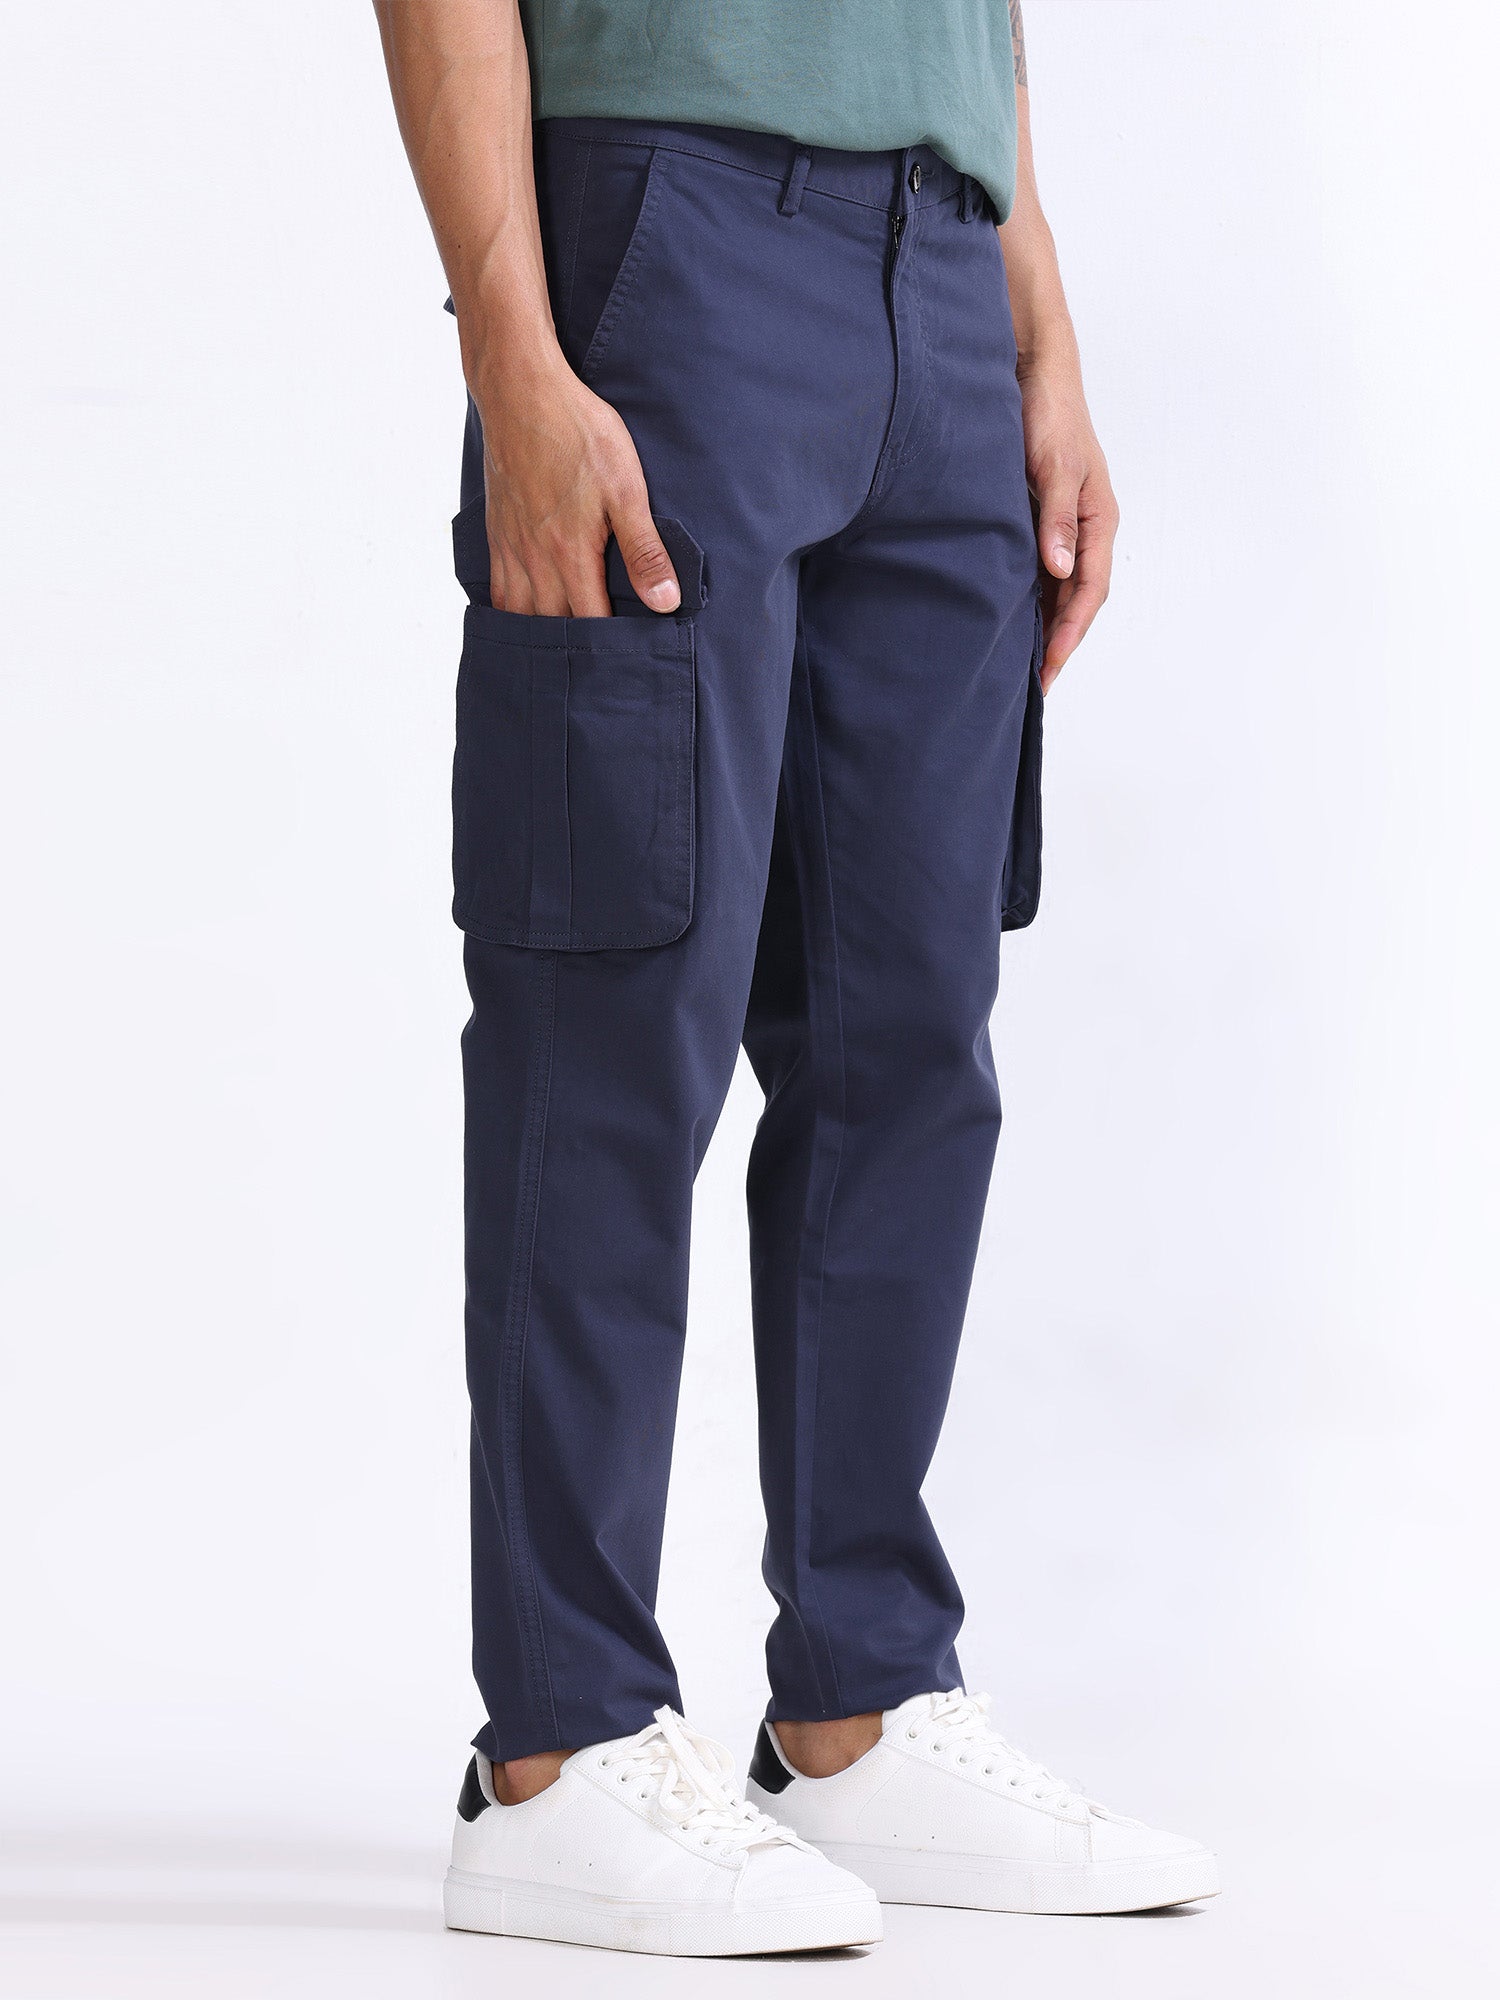 Buy trendy navy blue cargo pants online in india